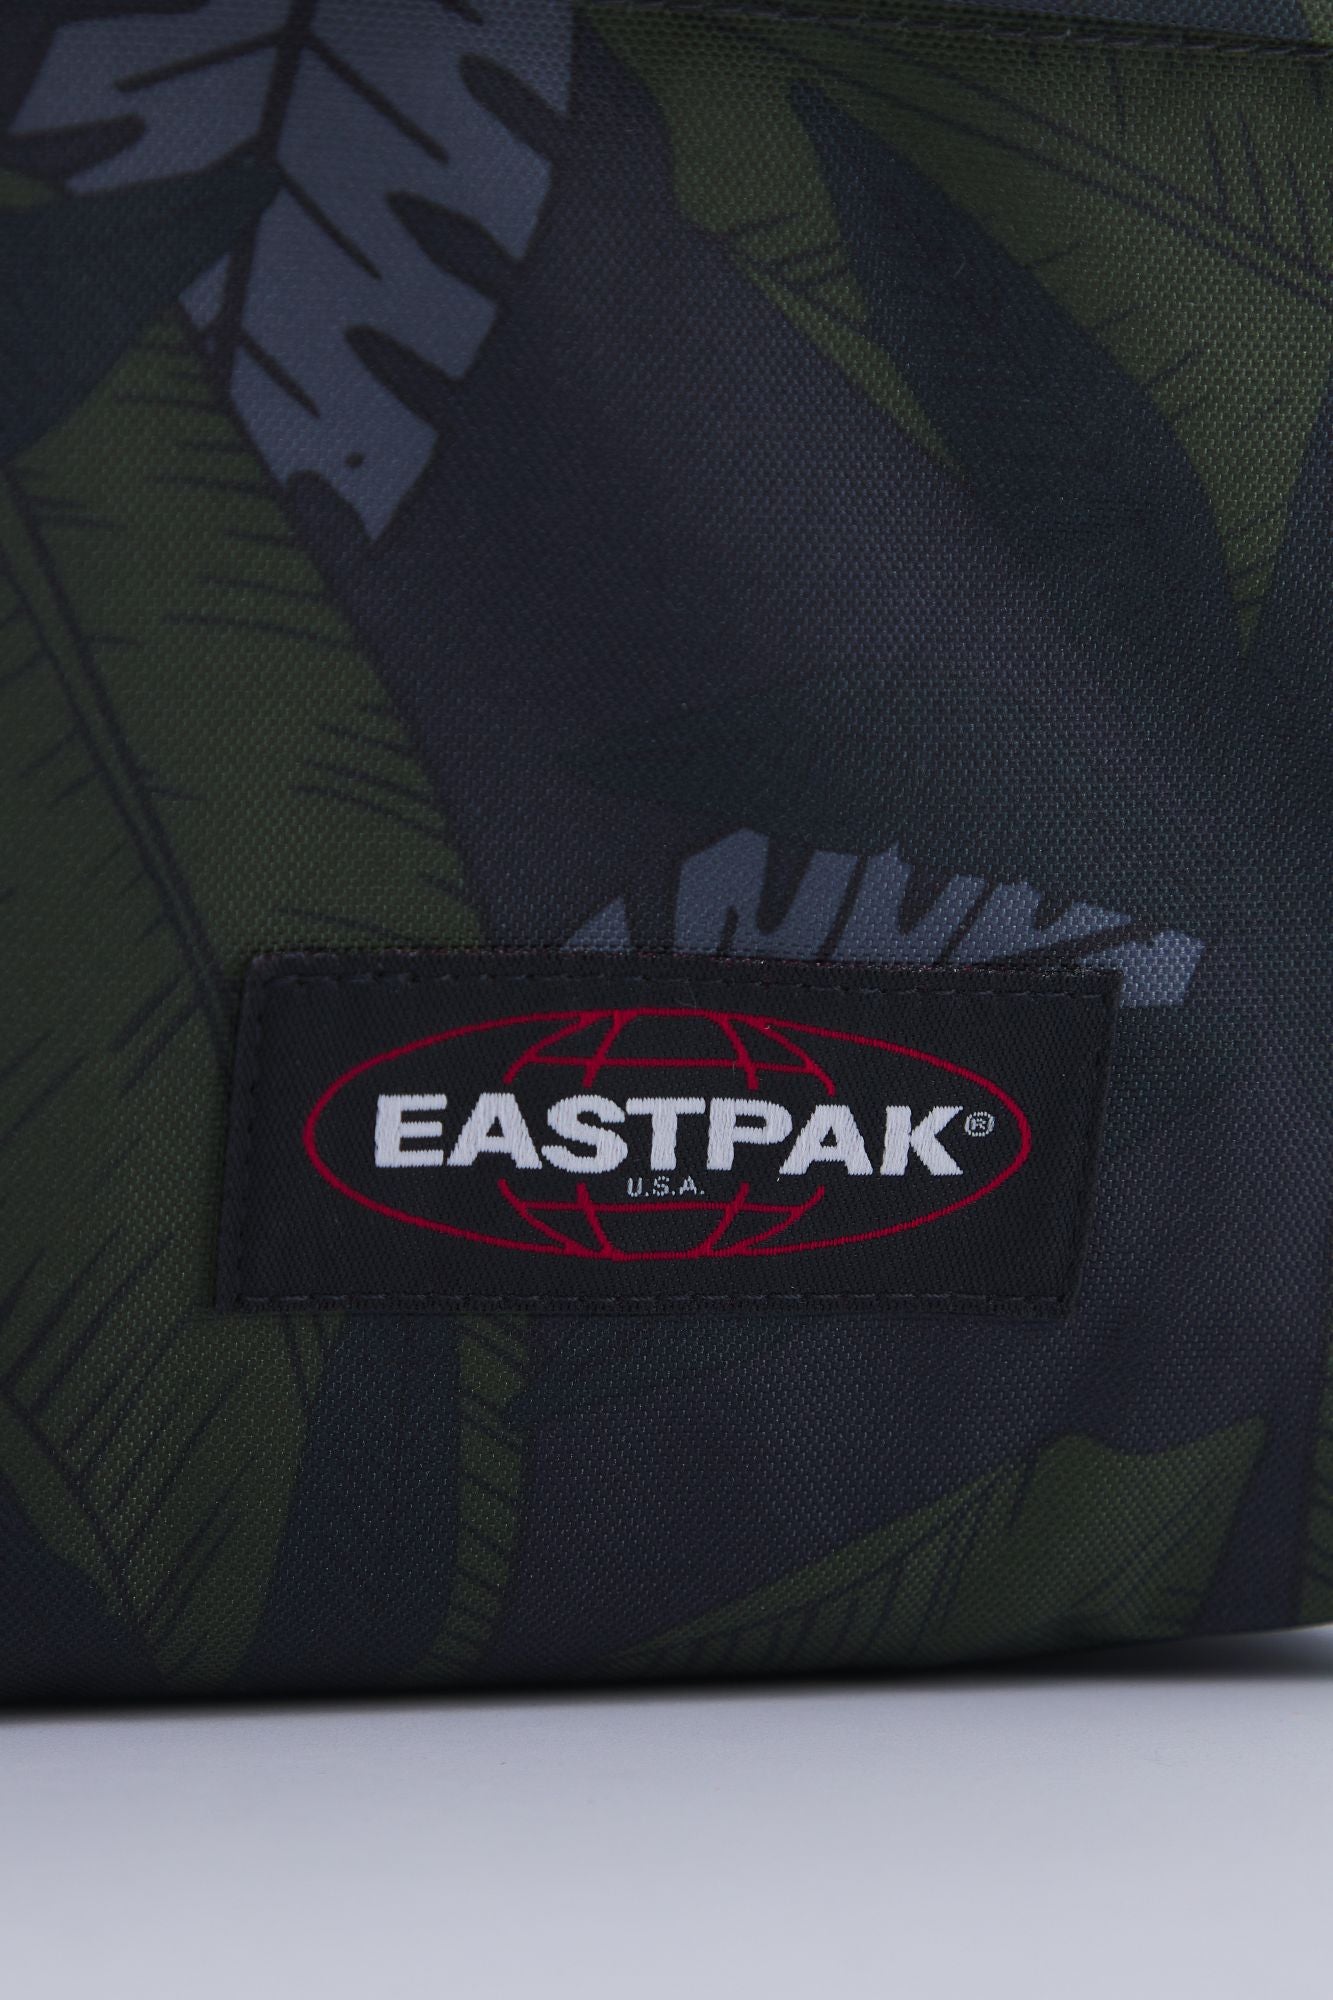 EASTPAK PADDED PAK'R en color FLORAL (4)